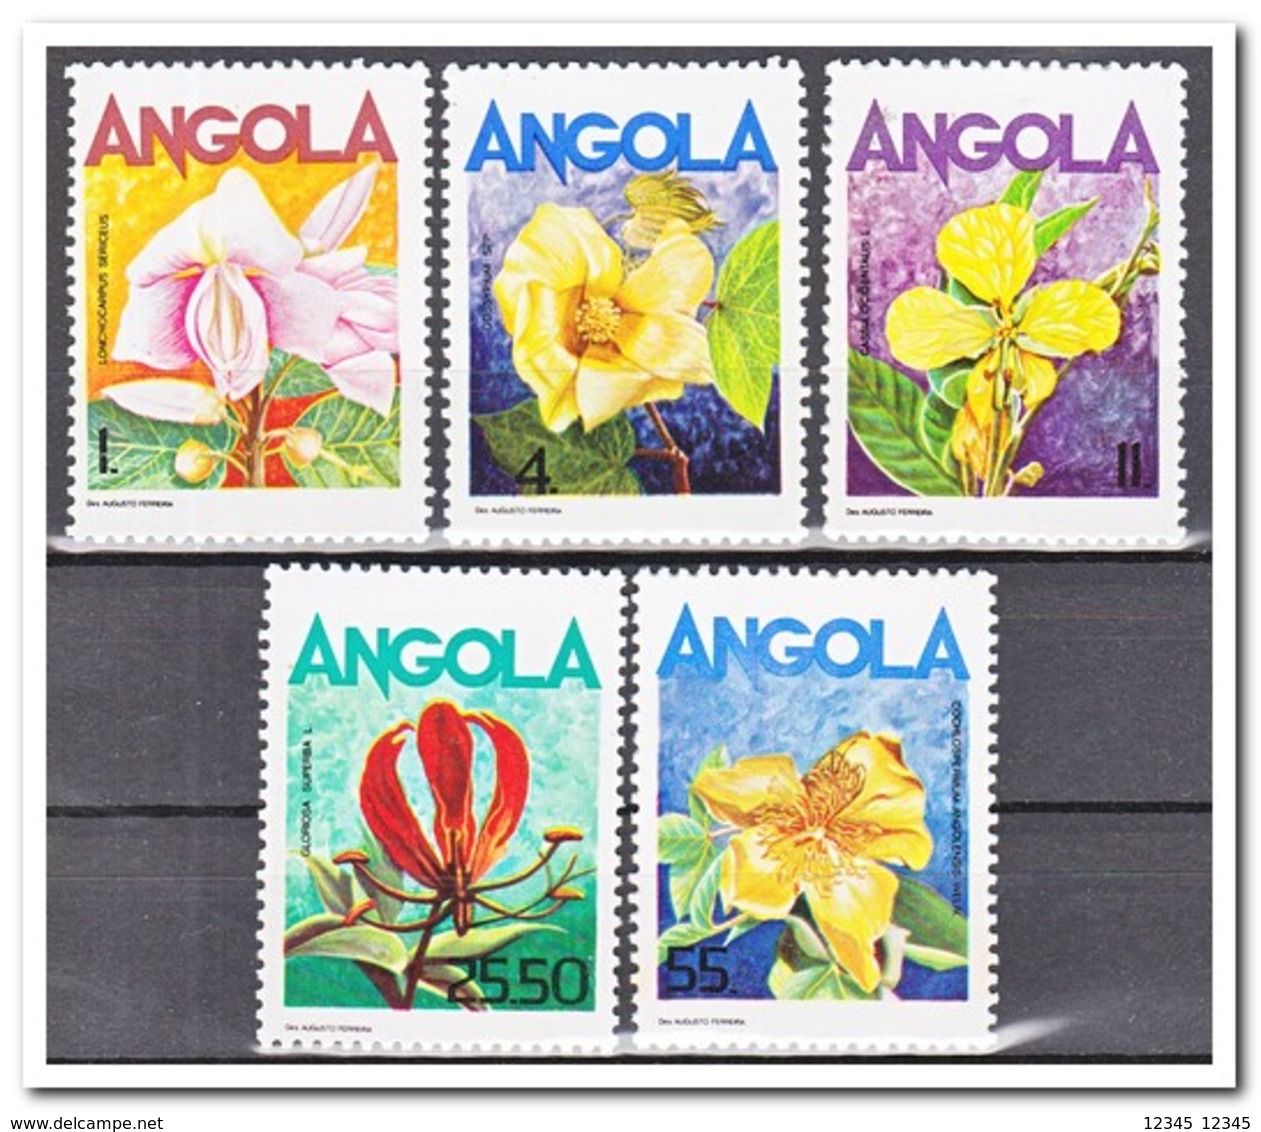 Angola 1984, Postfris MNH, Flowers - Angola